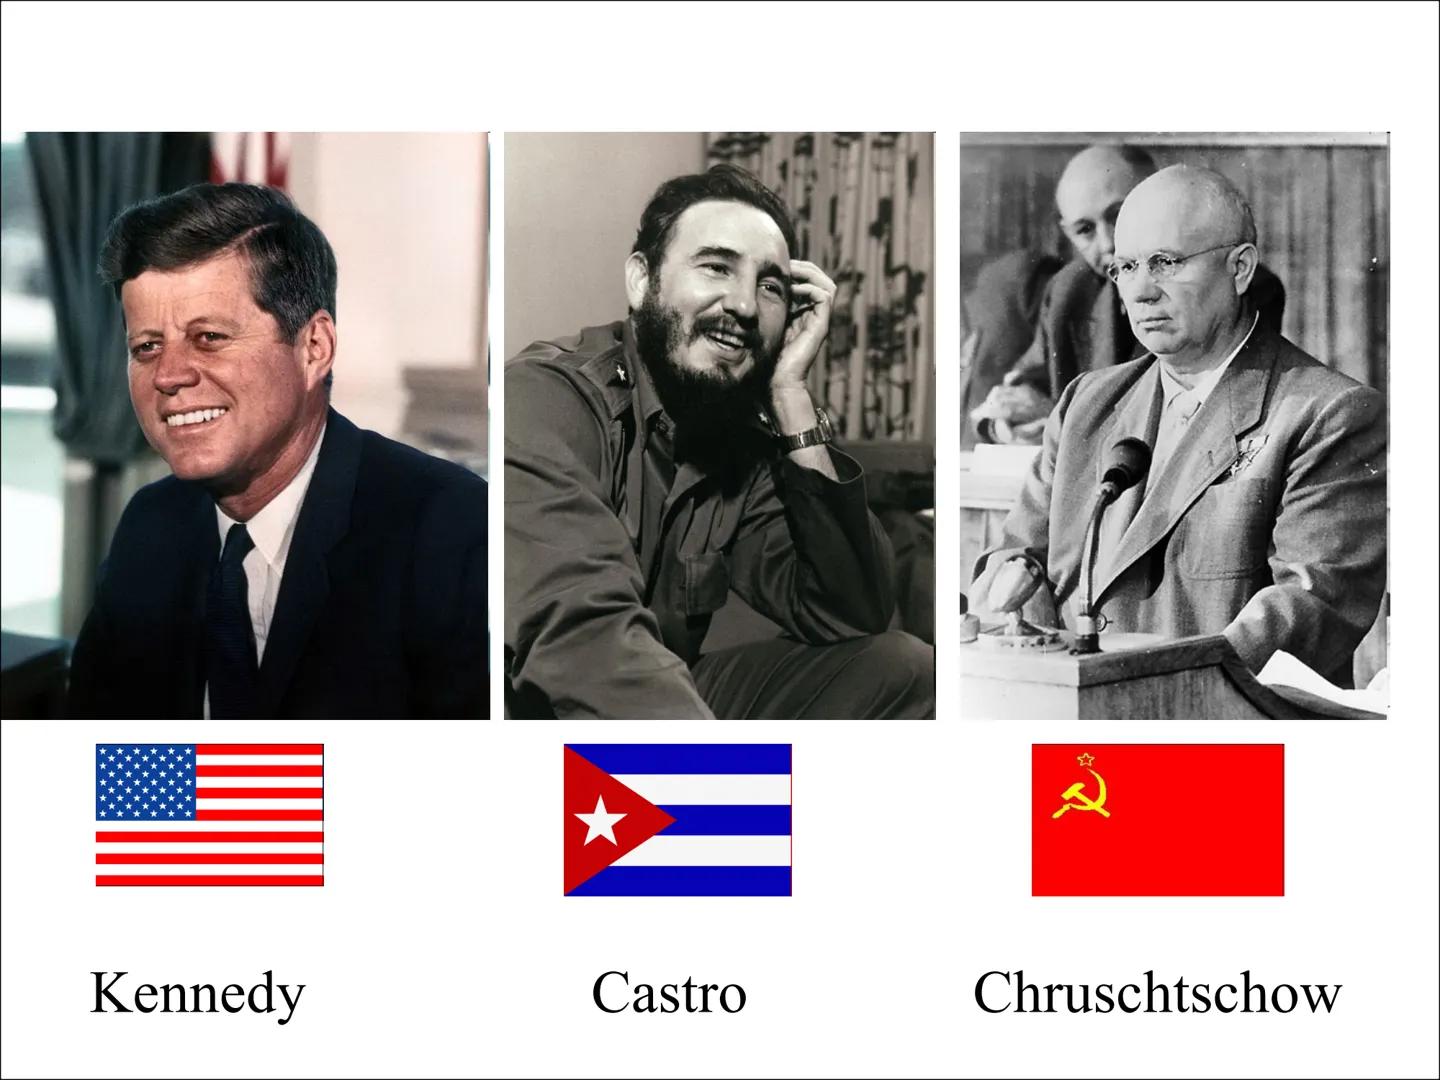 Die Kuba Krise - Handout
Kurzinfo:
Konflikt zwischen den USA und der Sowjetunion im Oktober 1962, nachdem die Sowjets atomare
Mittelstrecken